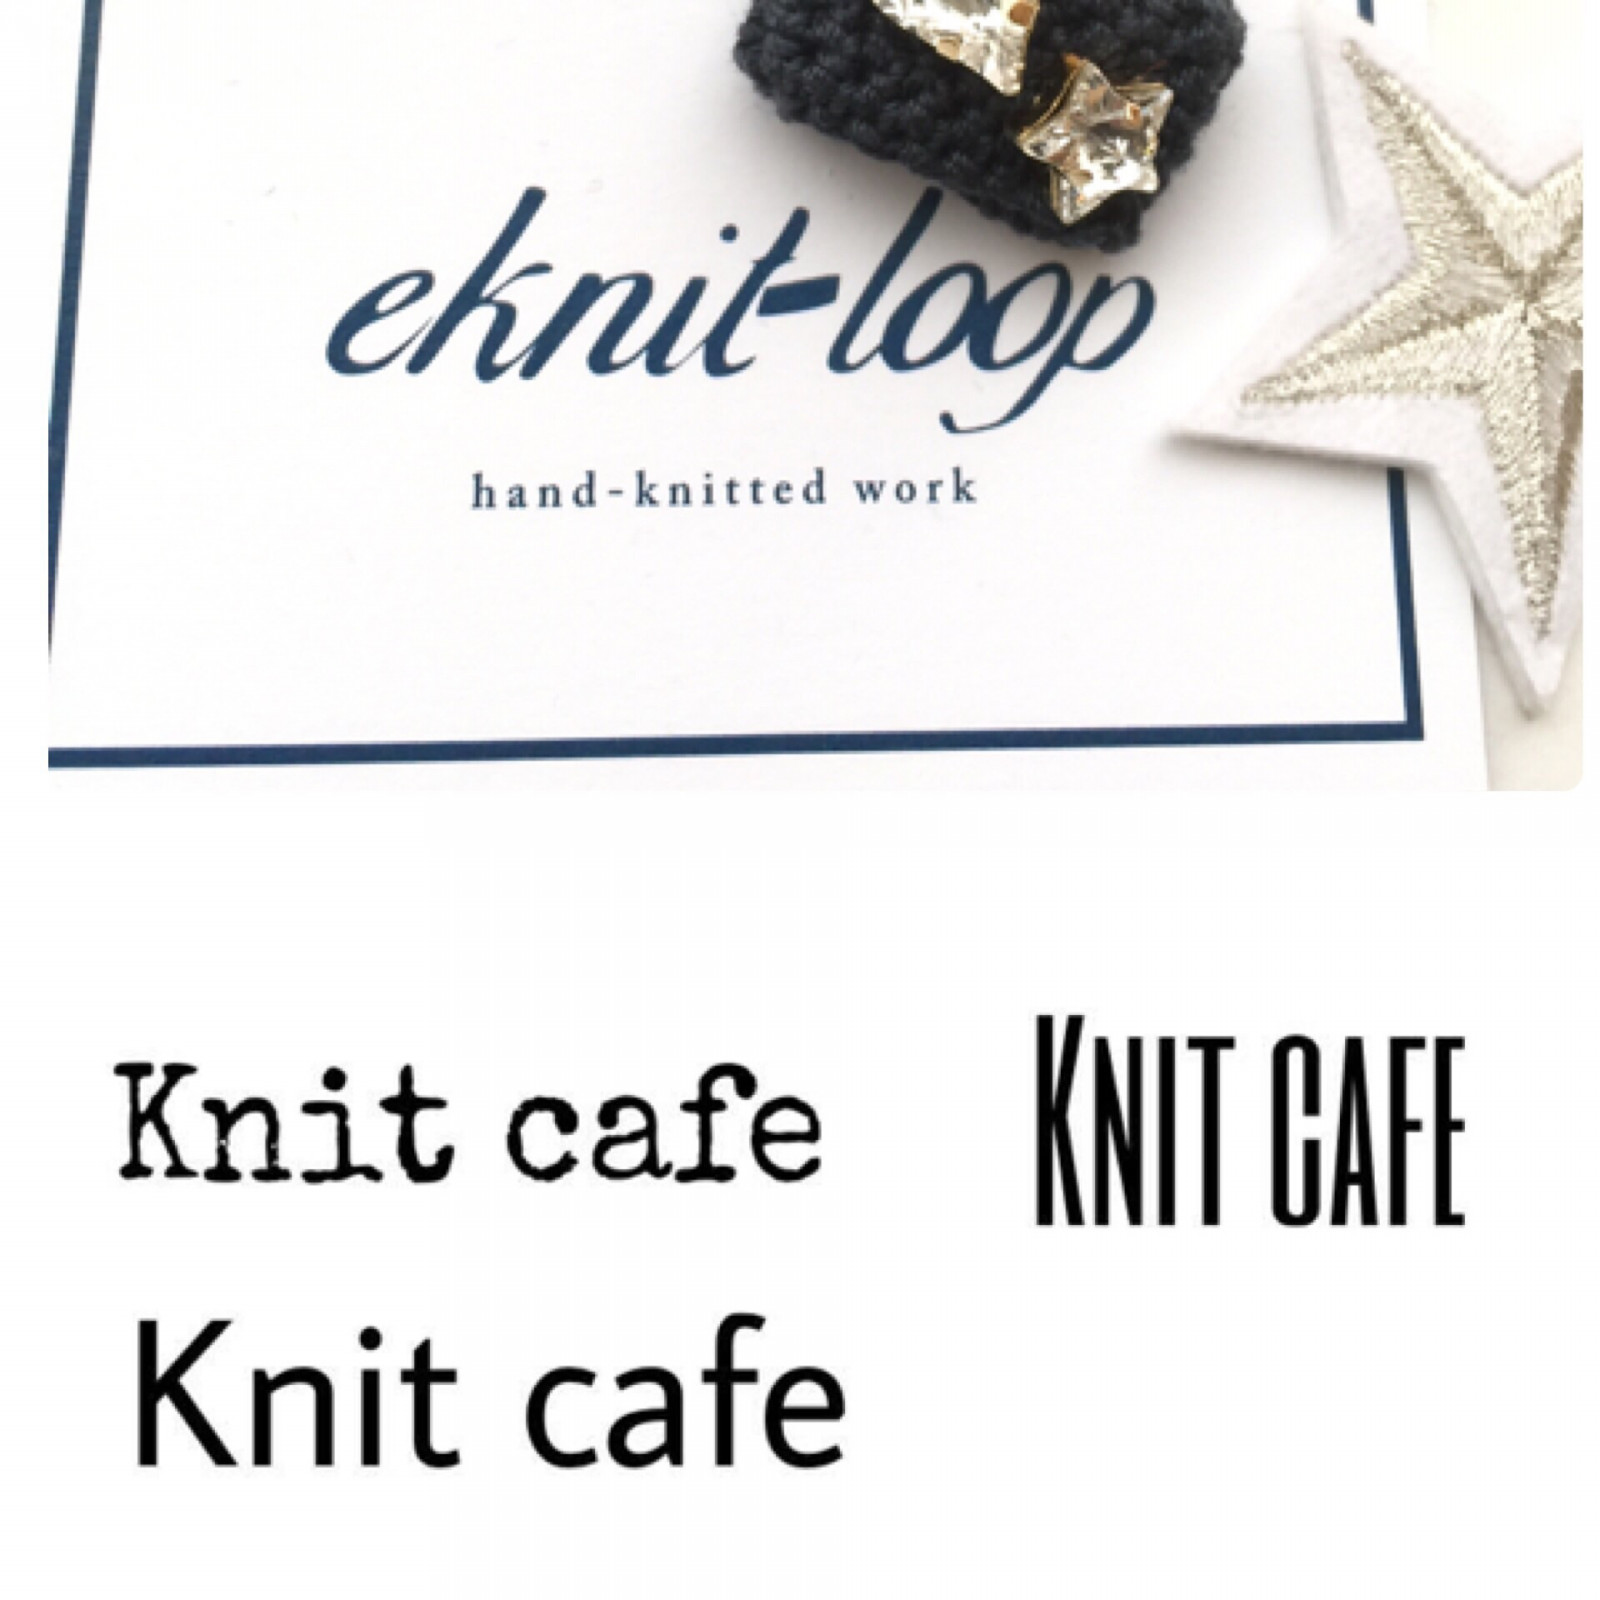 knit cafe 開催 募集開始